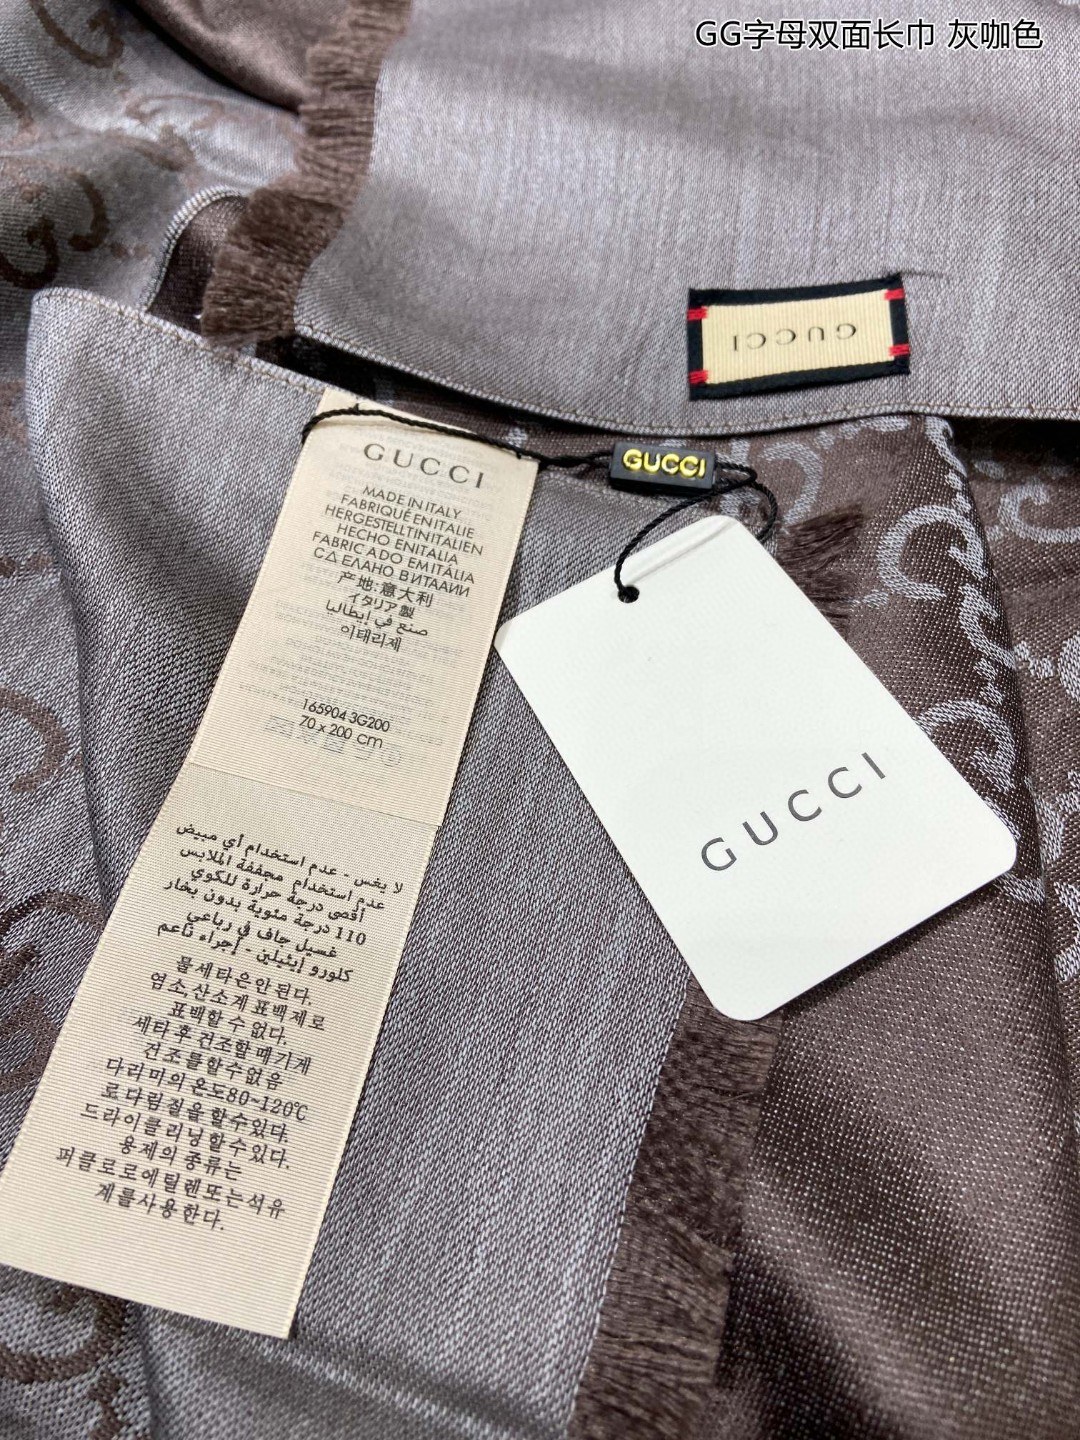 Gucci经典披肩GG字母双面长巾G专柜的常青树款中性款男女都可用品质极好️经典双G提花图案风靡了全世界